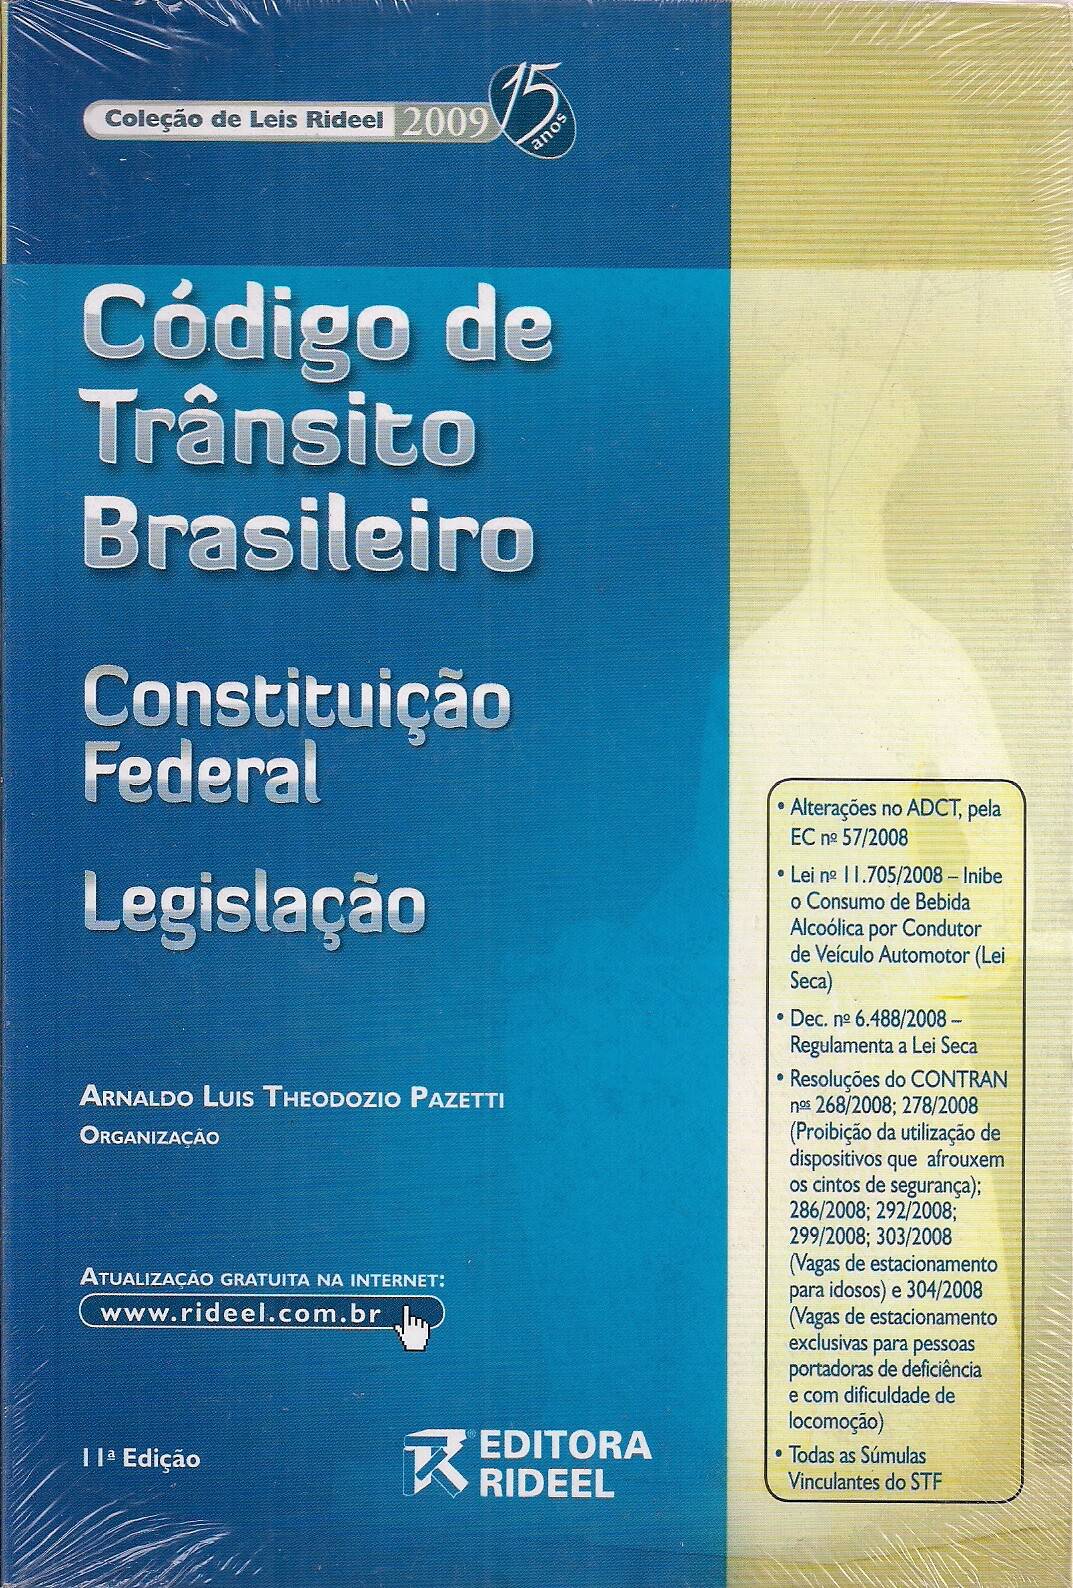 Foto 1 - Código de Trânsito Brasileiro - Constituição Federal Legislação